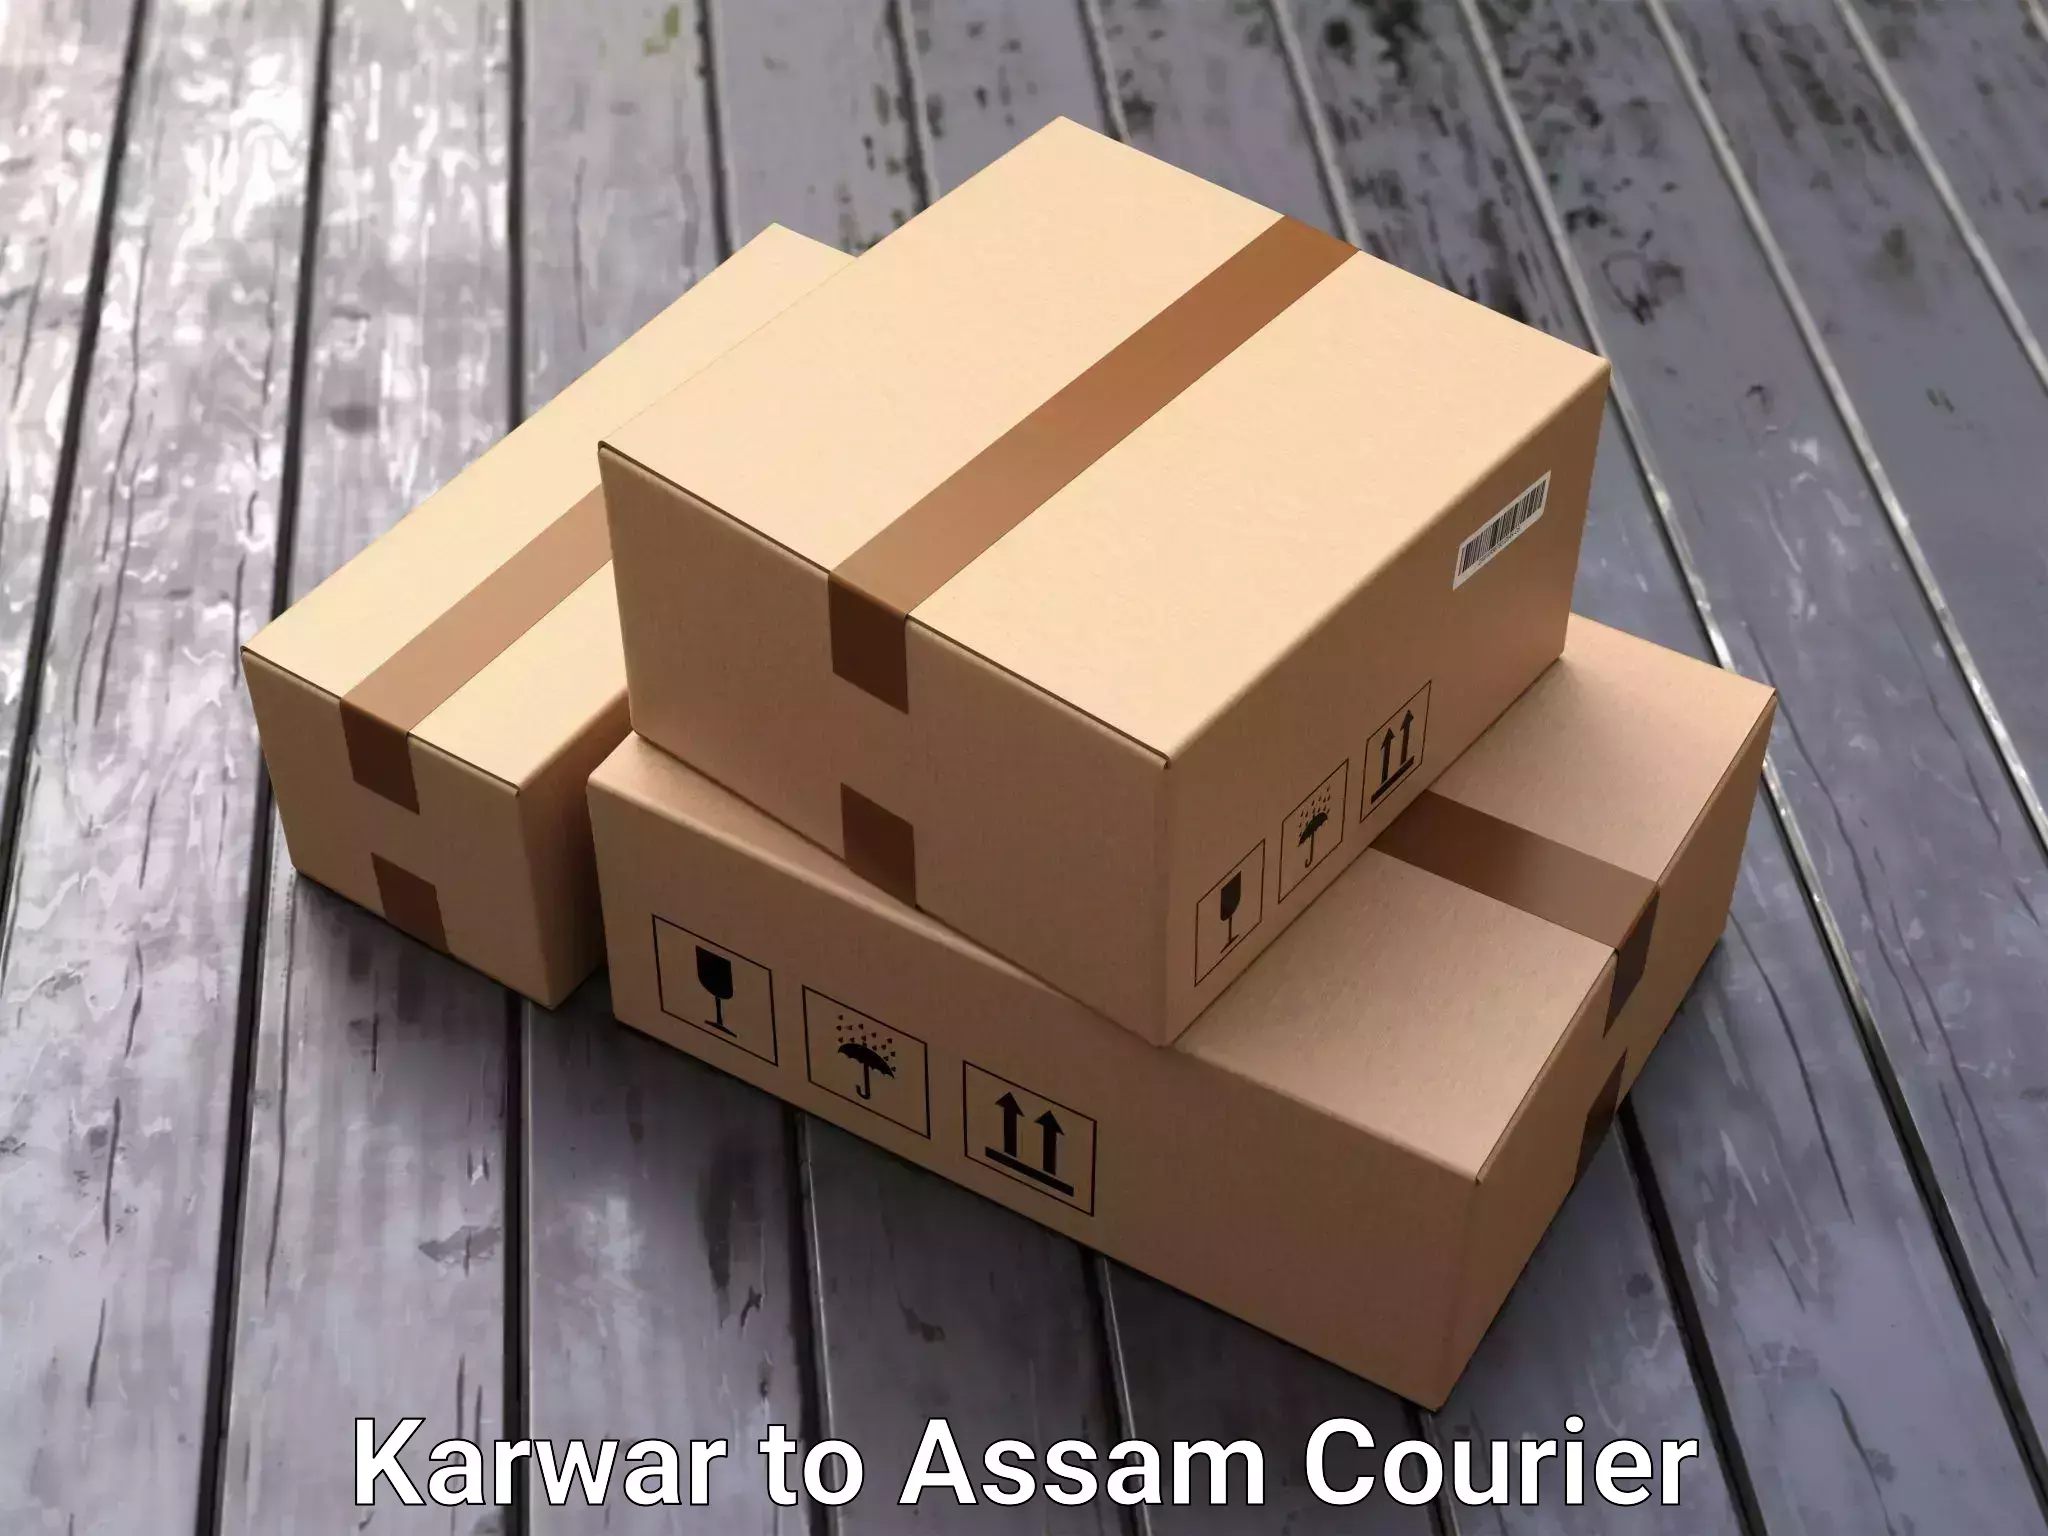 Furniture transport specialists Karwar to Golakganj